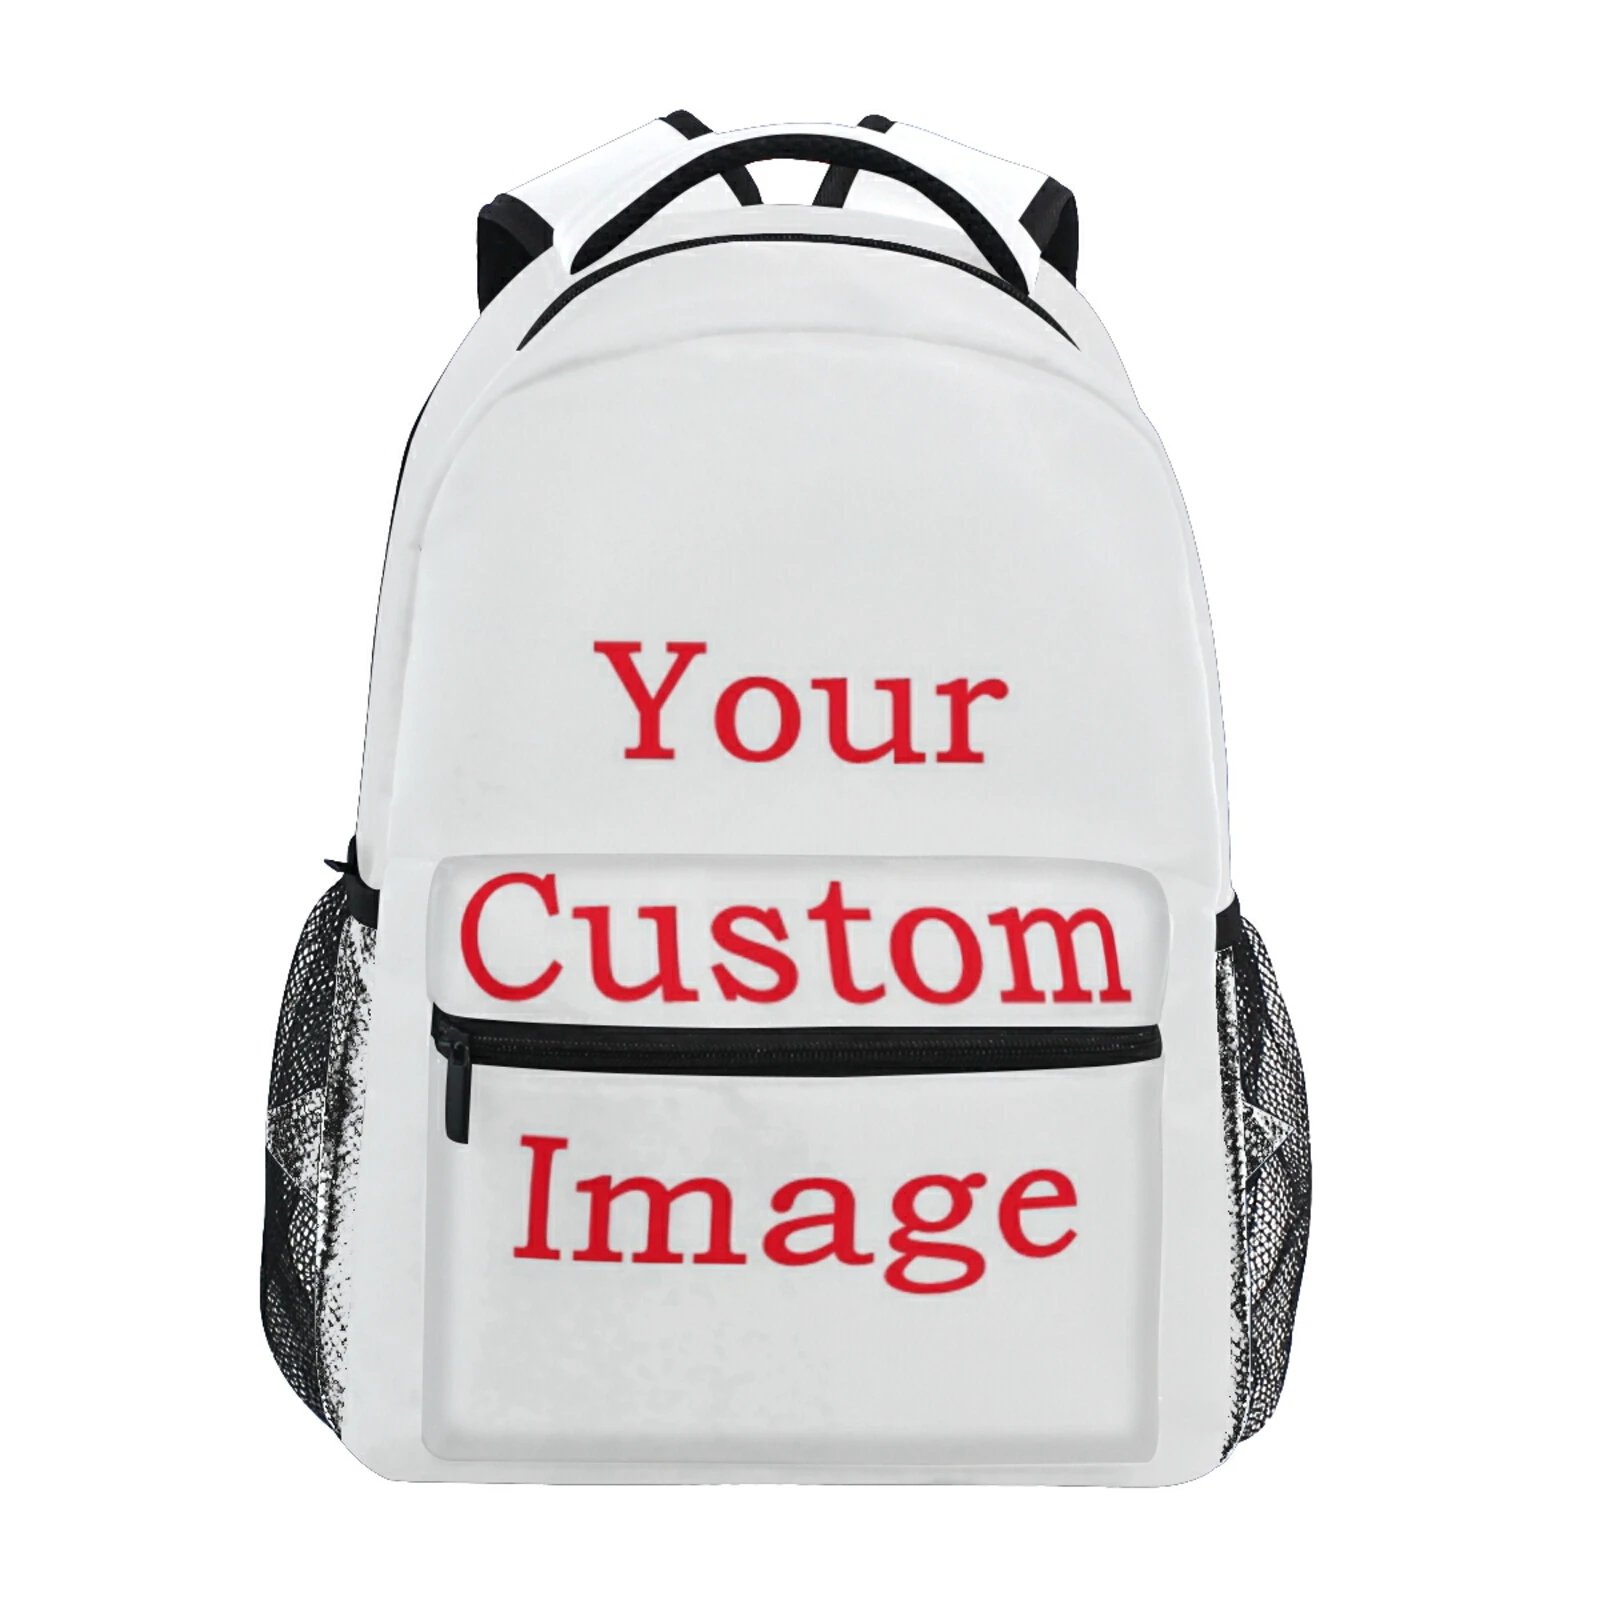 Personalized Custom Pattern Children Backpack School Bag Casual Large Capacity Waterproof Teenagers Laptop Bag Schoolbag New